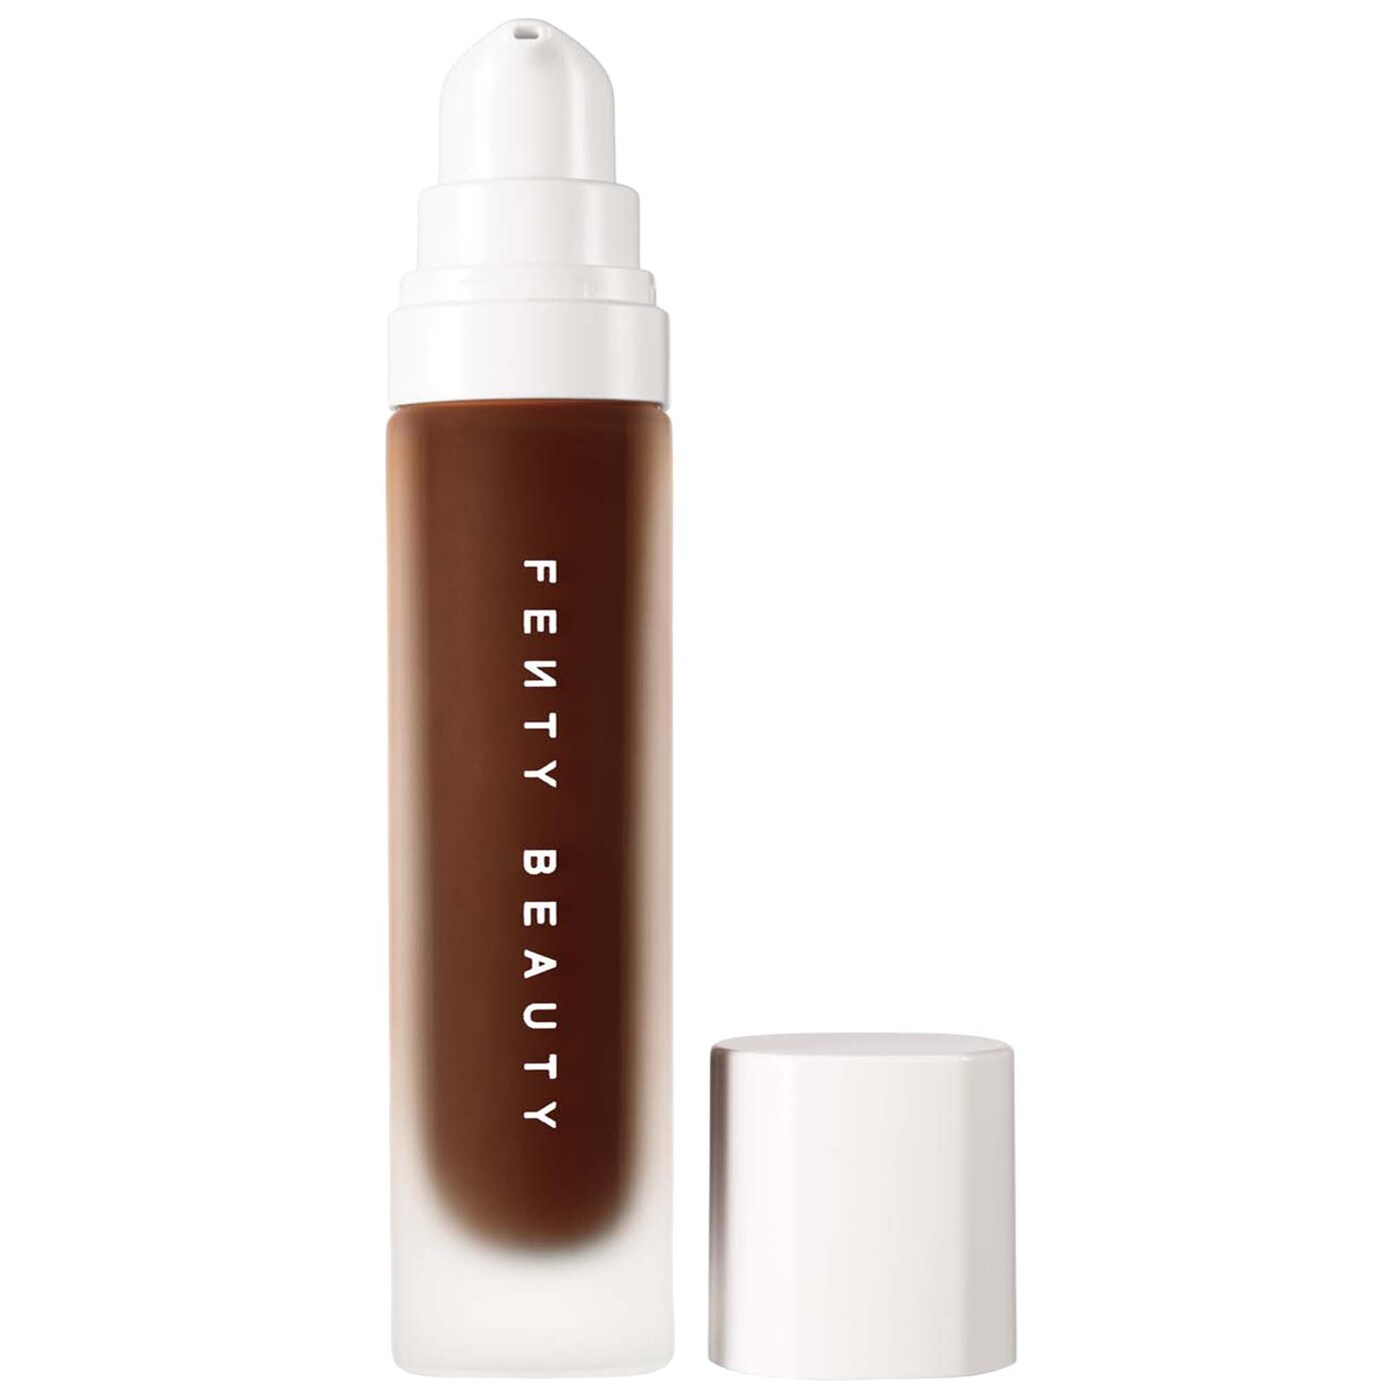 Bottle of Fenty Beauty Pro Filt’r Soft Matte Longwear Liquid Foundation.